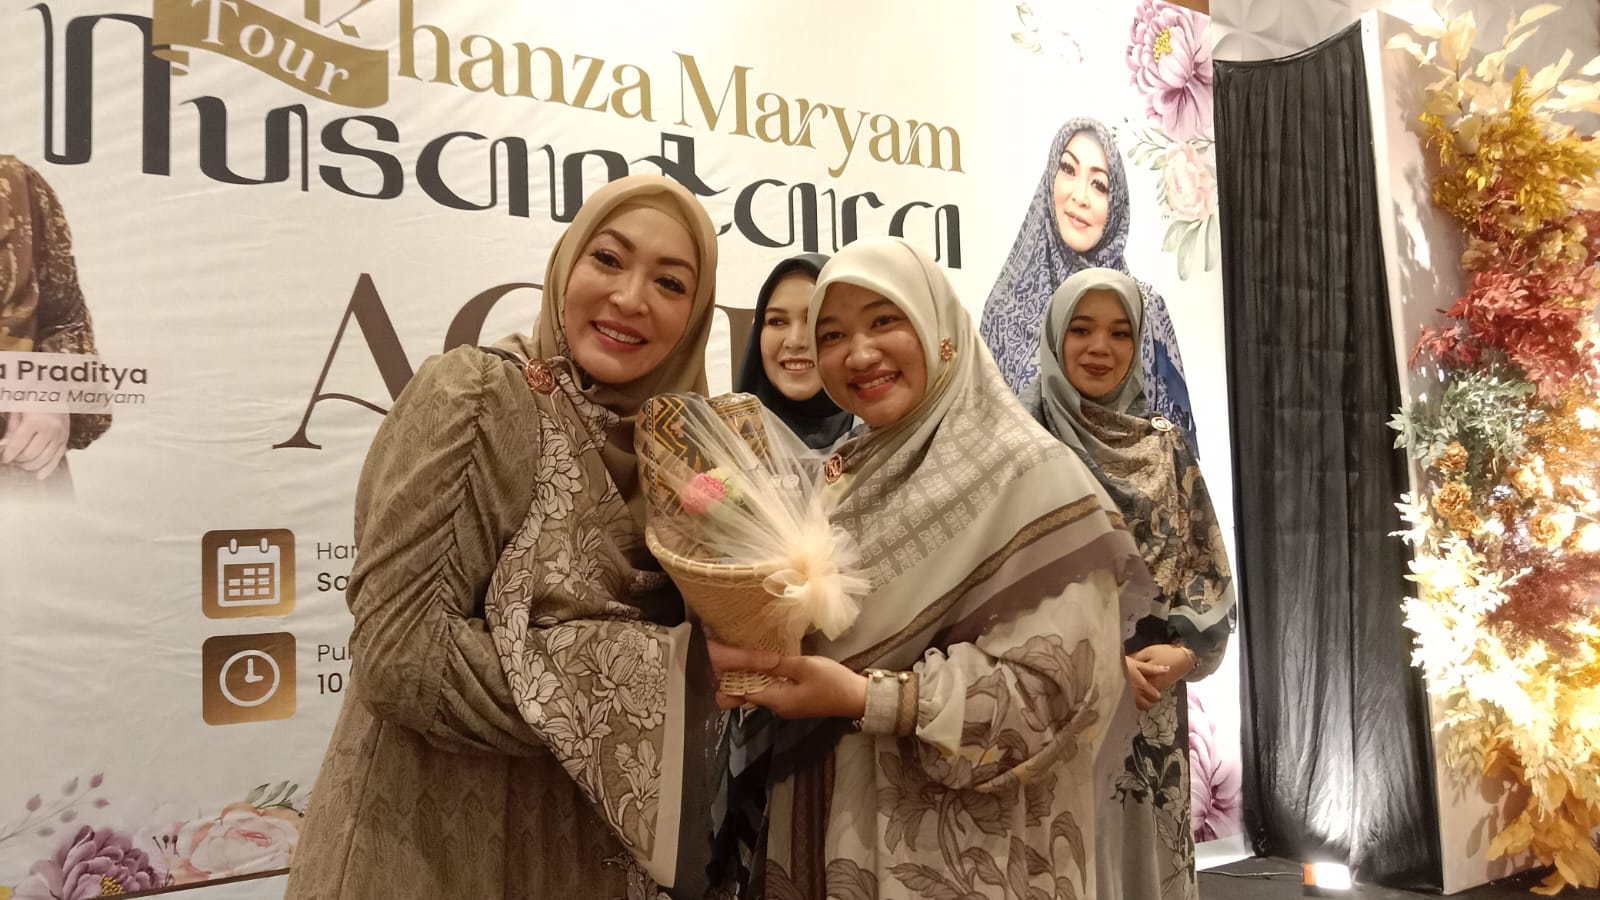 Cut Rezky Gunakan Gaun Khanza Maryam Pada Tour Nusantara di Aceh